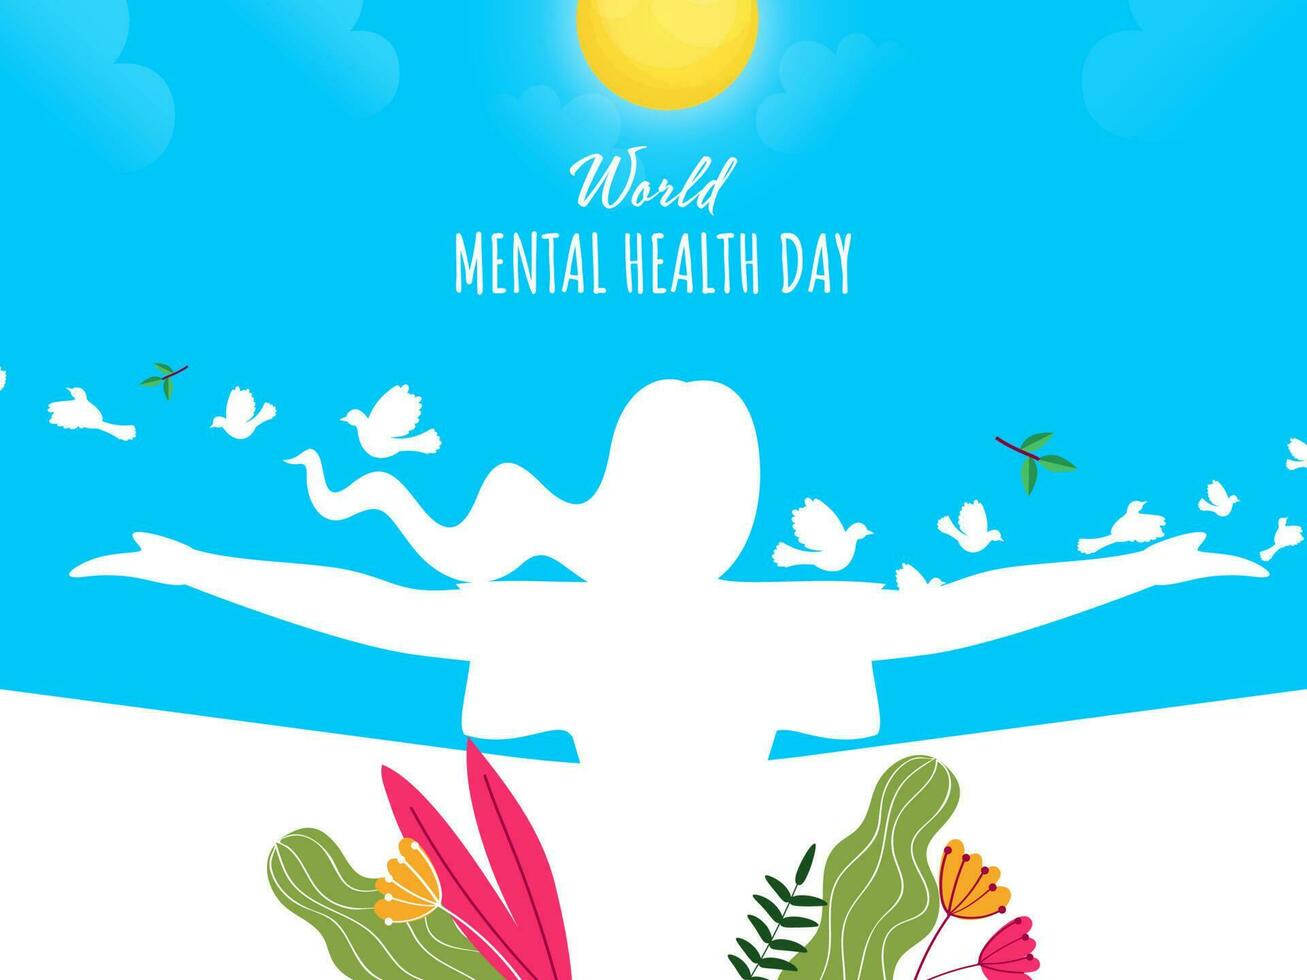 Welt mental Gesundheit Tag Konzept mit Silhouette Frau öffnen ihr Waffen, fliegend Vögel, Blumen, Blätter, Sonne auf Blau und Weiß Hintergrund. vektor